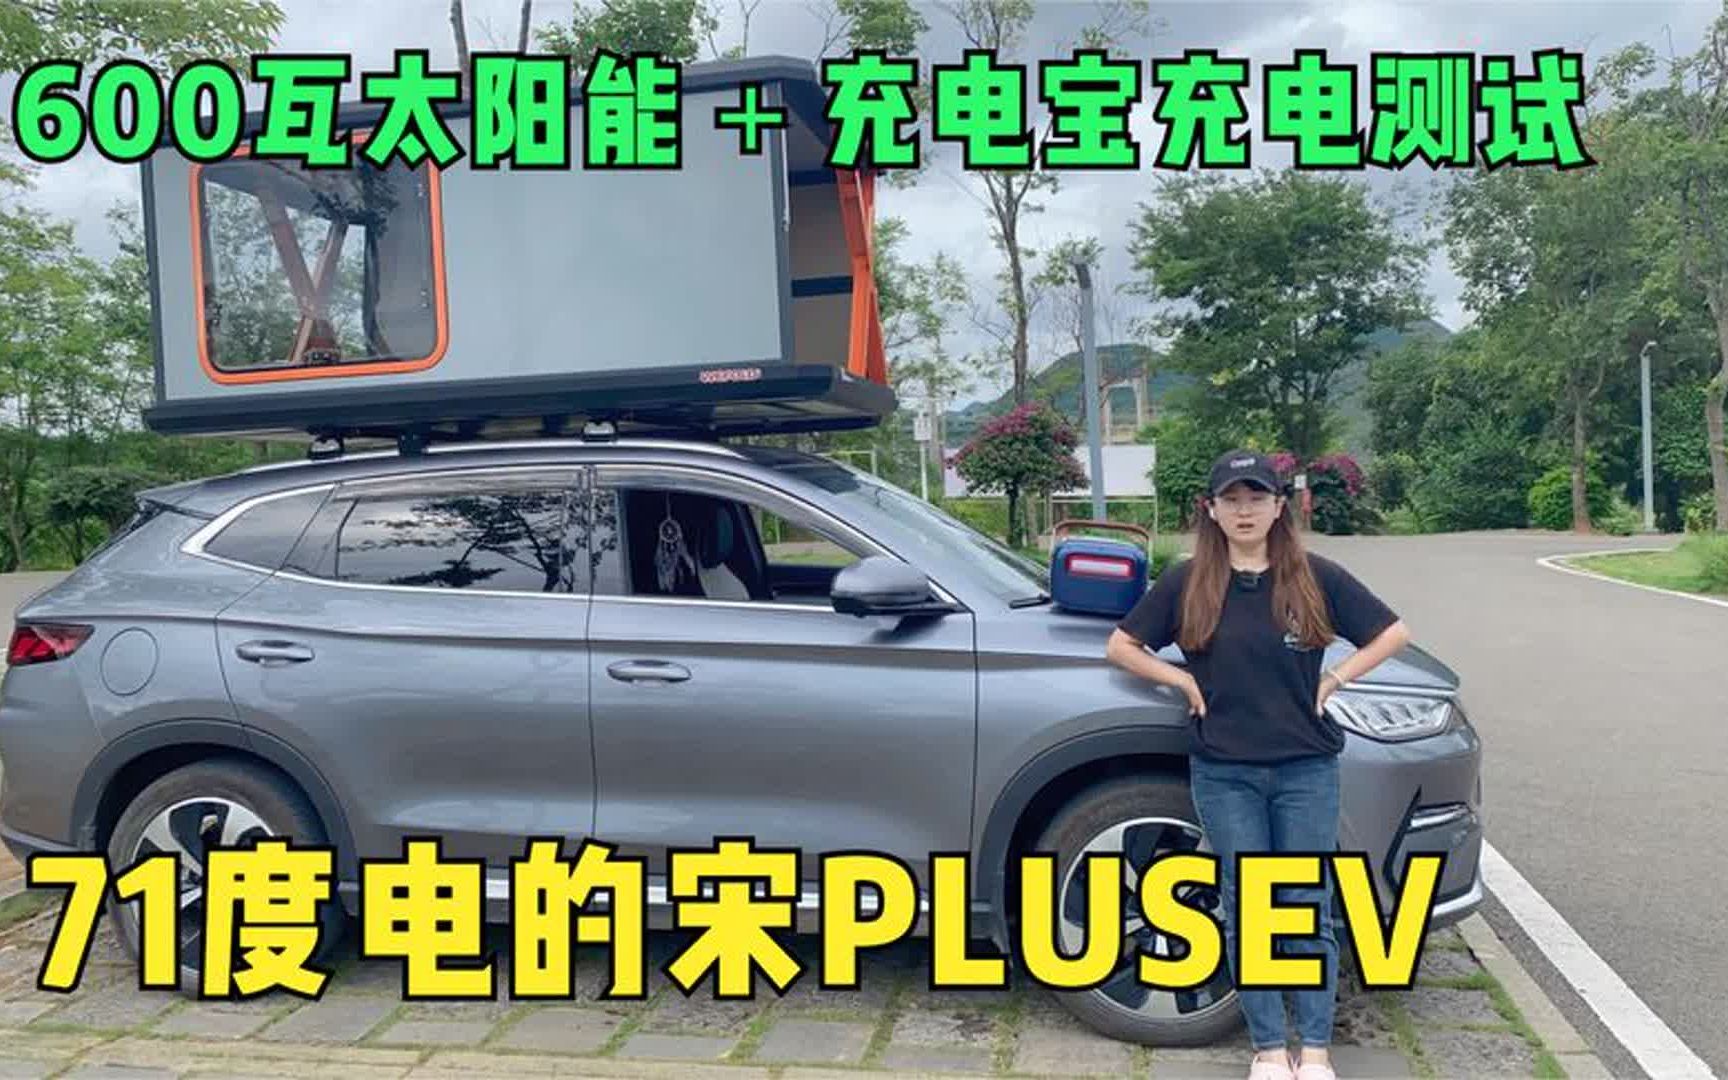 妹子给宋PLUSEV车顶加装600瓦太阳能去旅行，测试能给车充电吗？